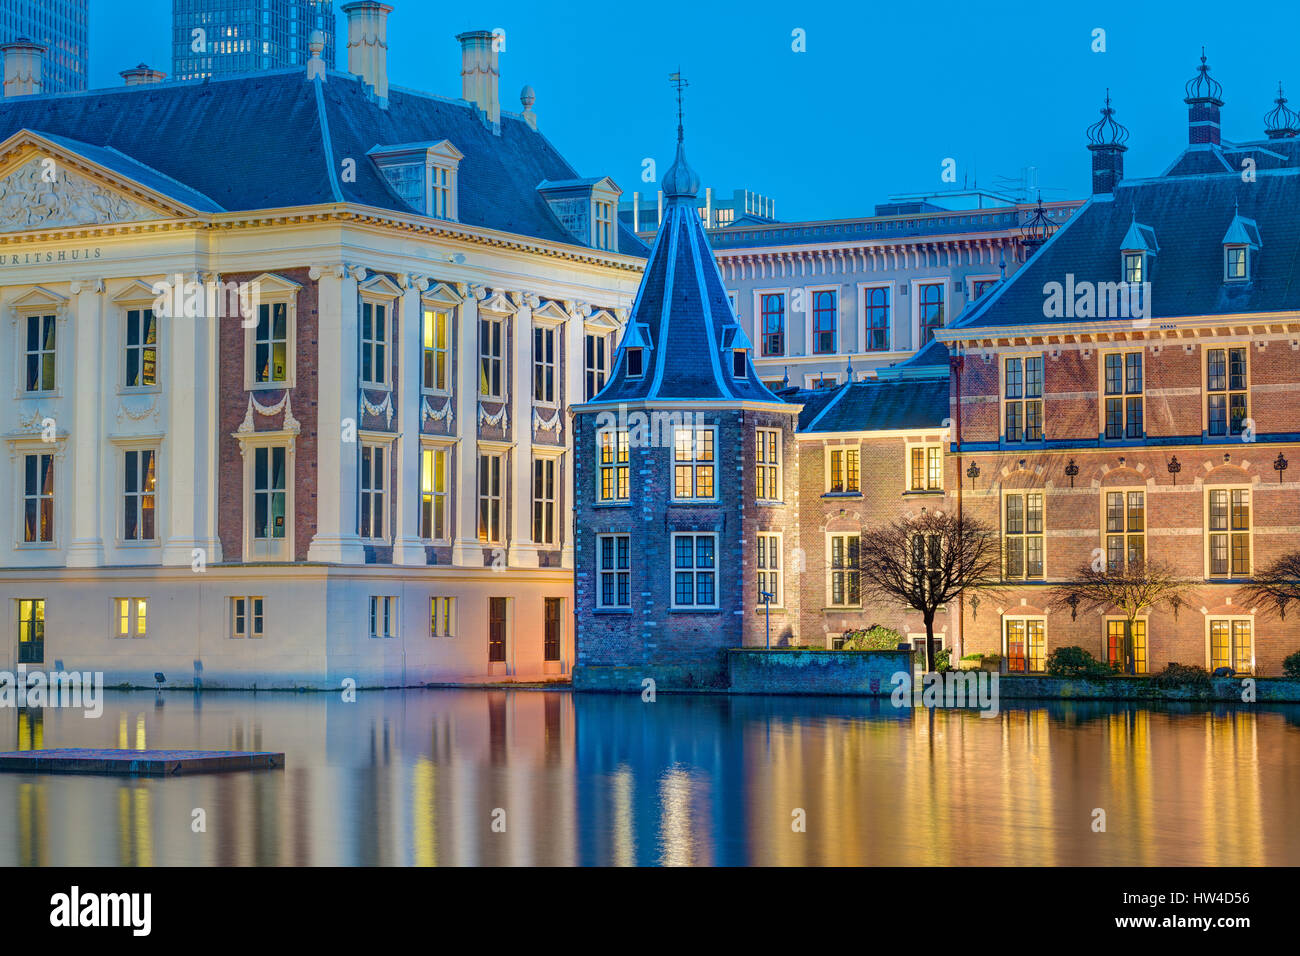 La Haya, Países Bajos edificios del Parlamento. Het Torentje - La pequeña torre - Oficina del Primer Ministro holandés. Foto de stock